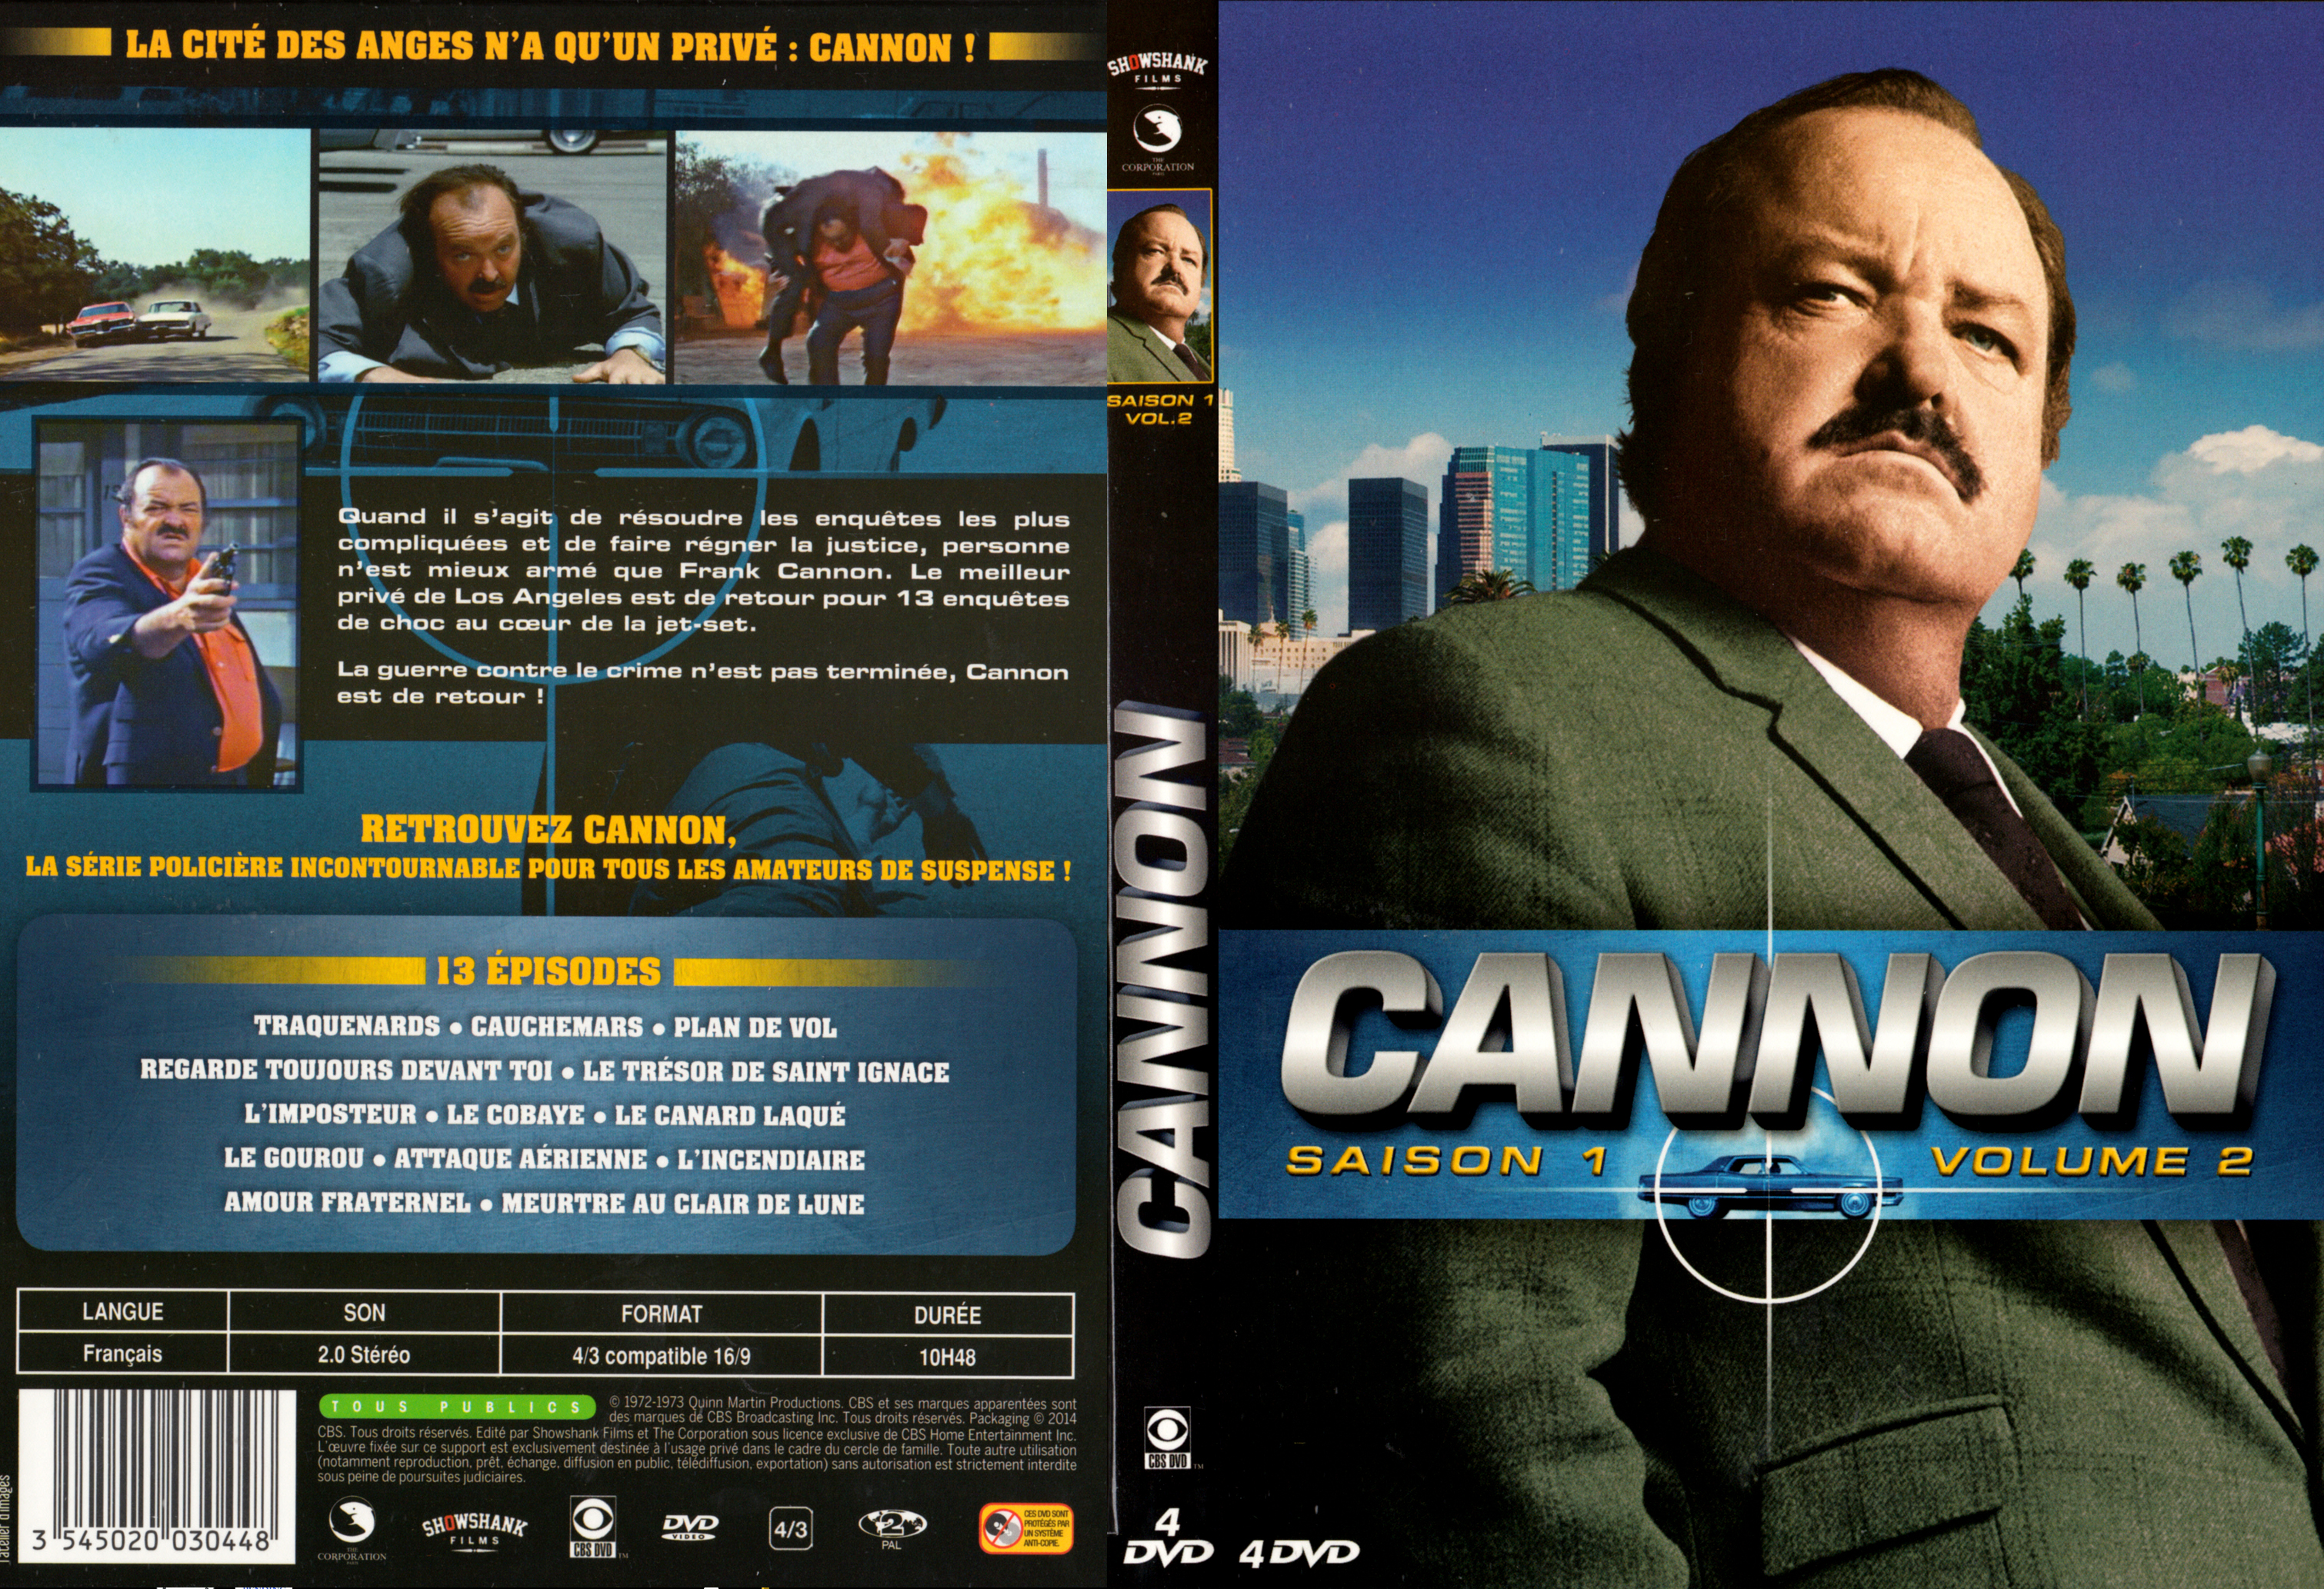 Jaquette DVD Cannon Saison 1 Vol 2